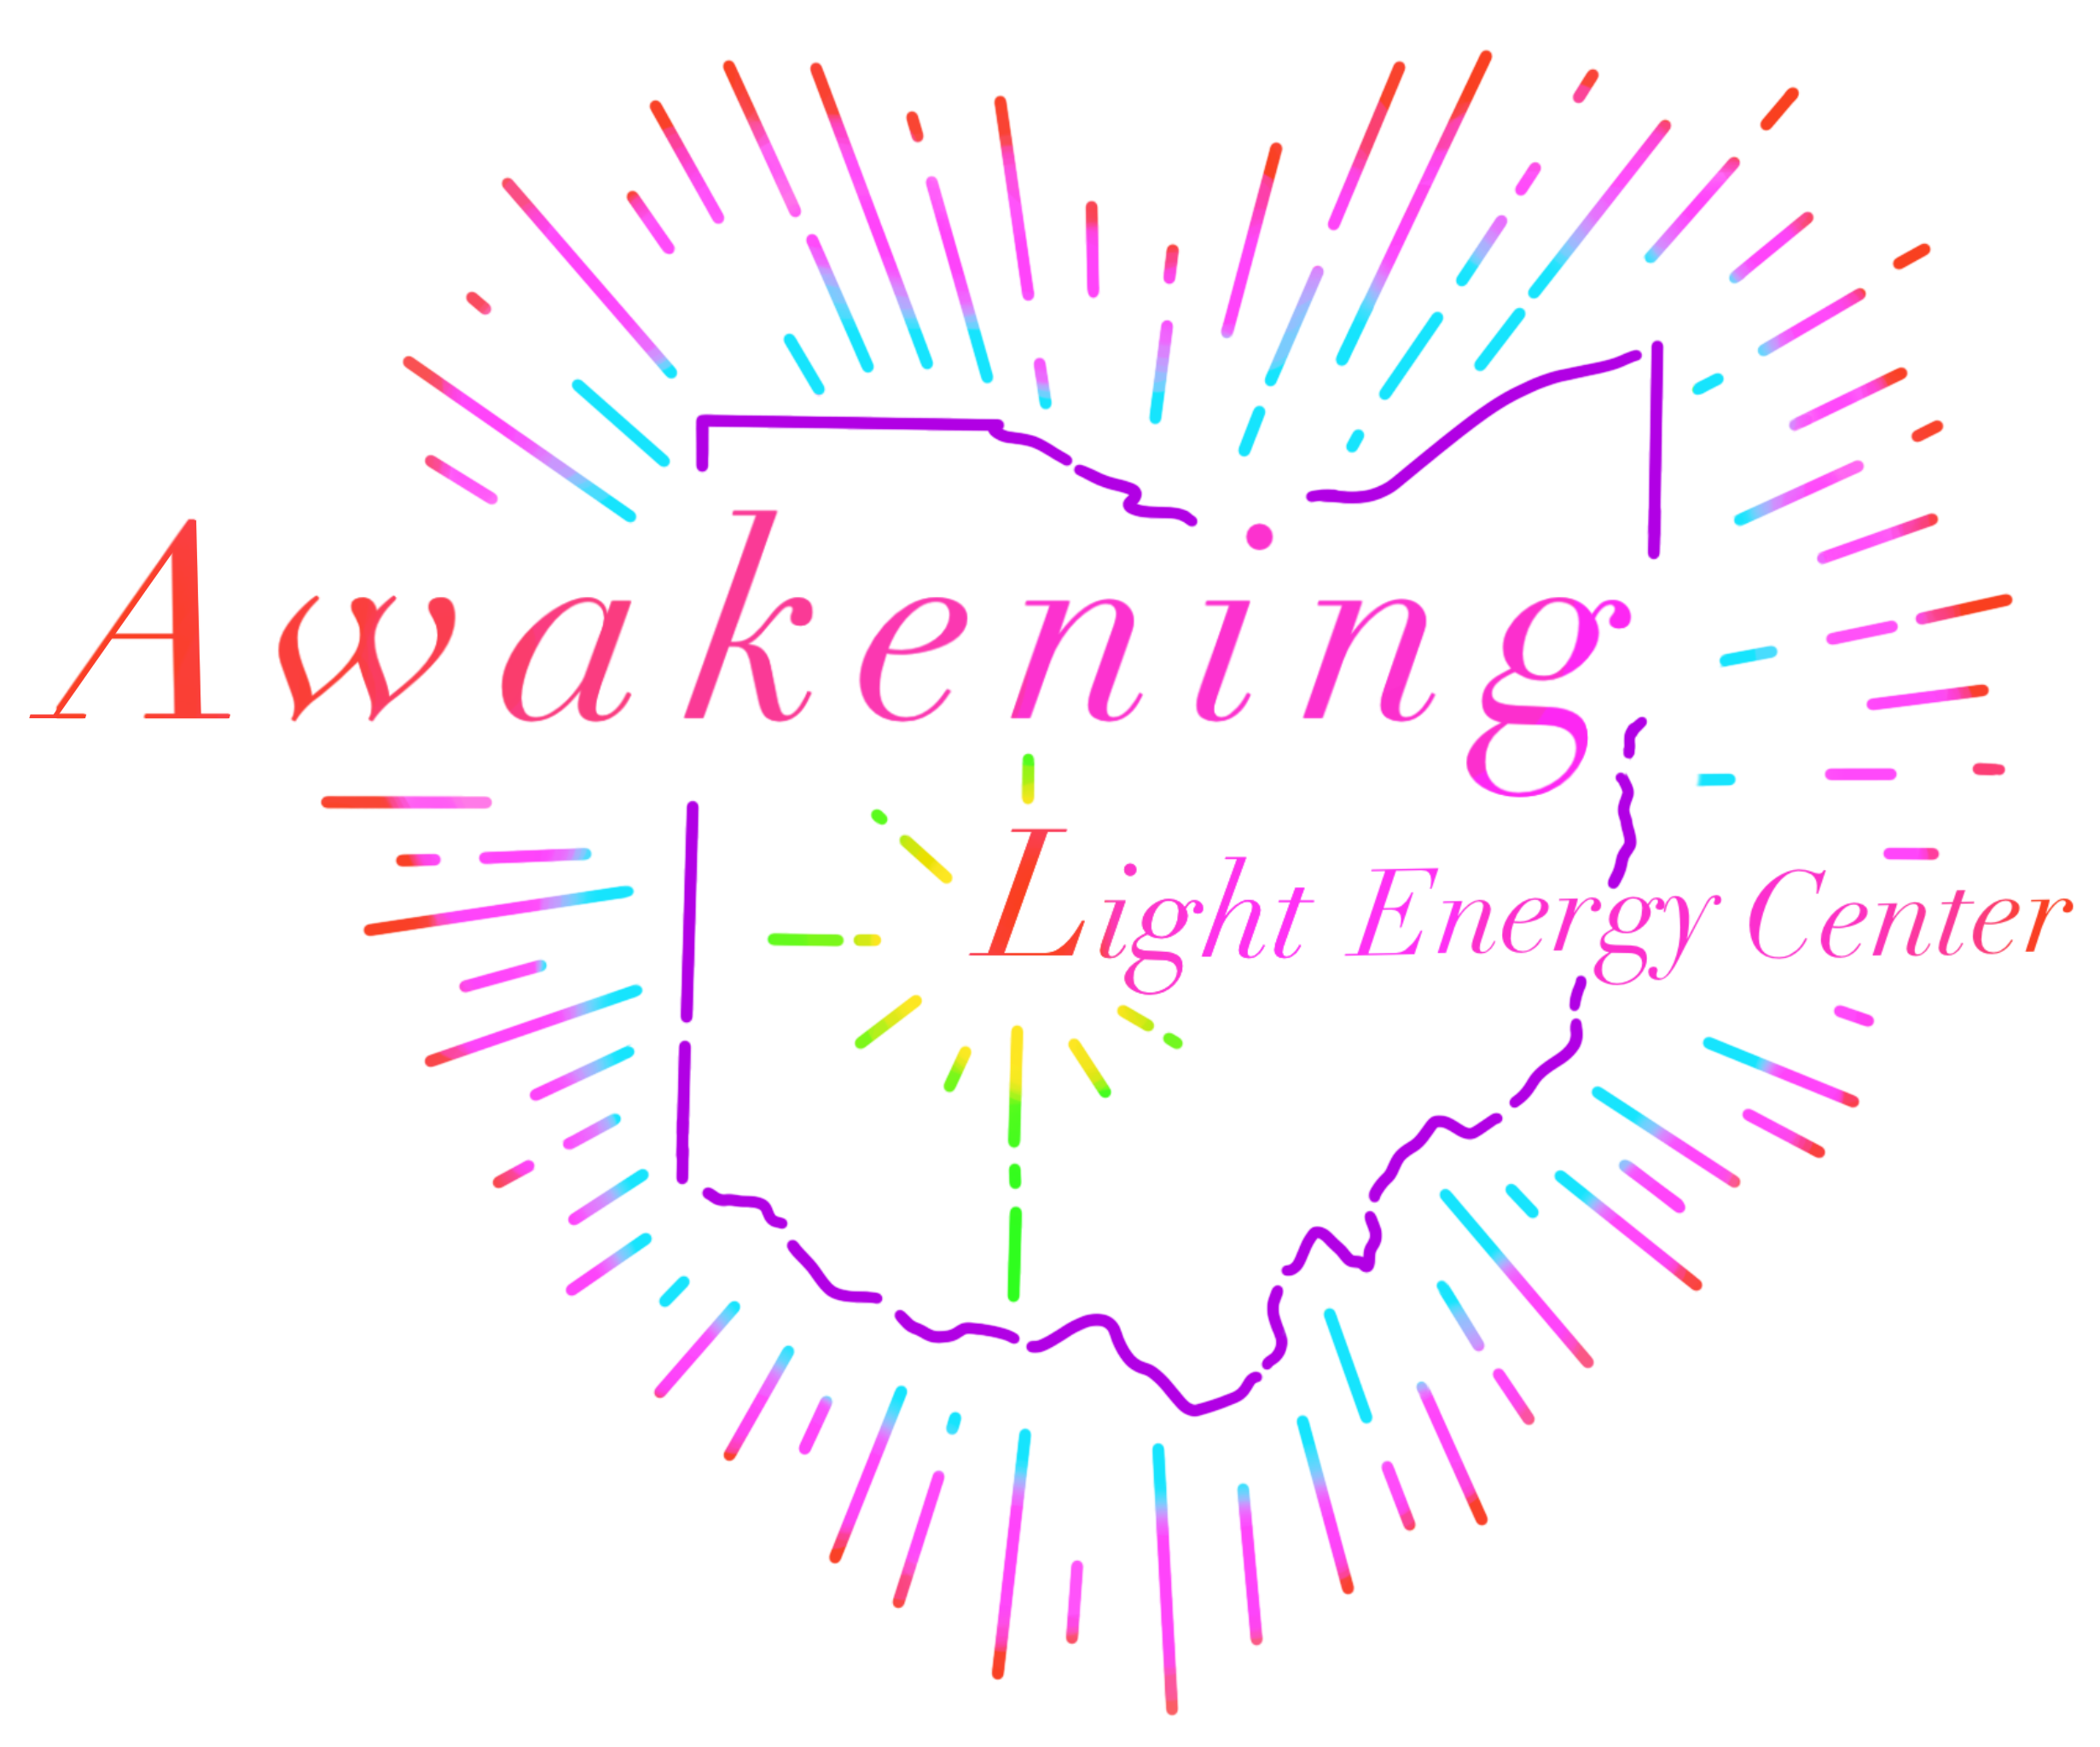 Awakening Light Energy Center